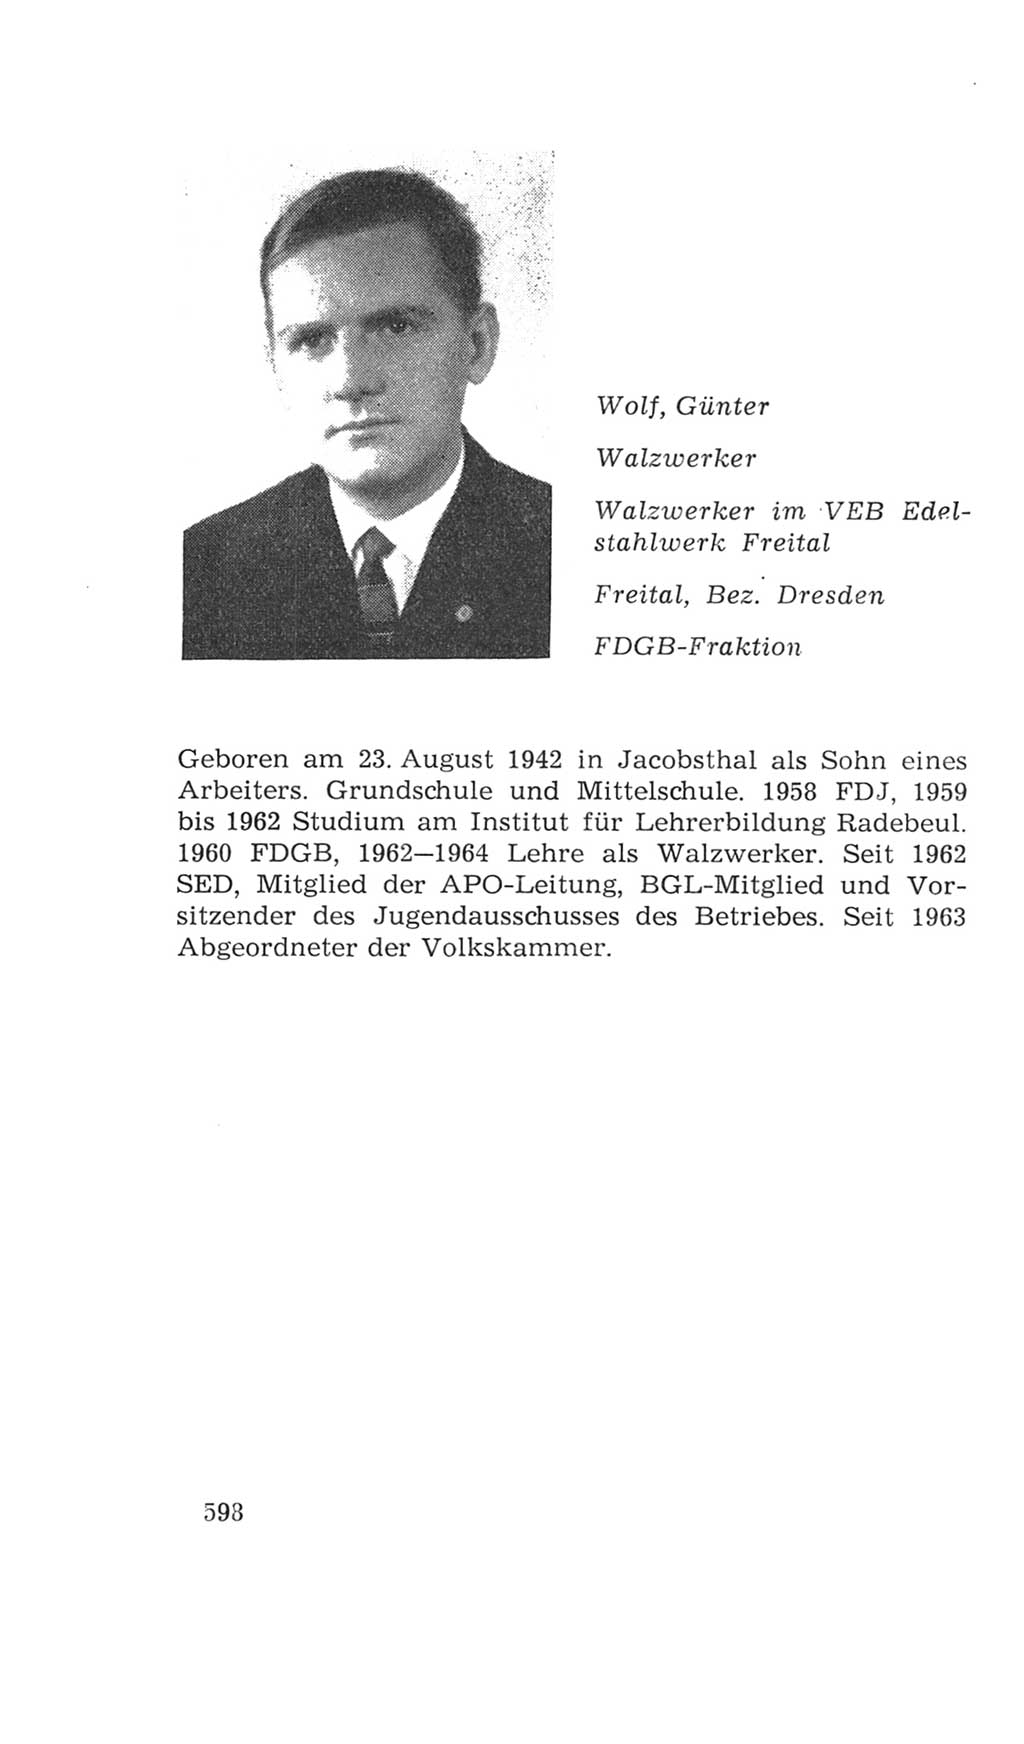 Volkskammer (VK) der Deutschen Demokratischen Republik (DDR), 4. Wahlperiode 1963-1967, Seite 598 (VK. DDR 4. WP. 1963-1967, S. 598)